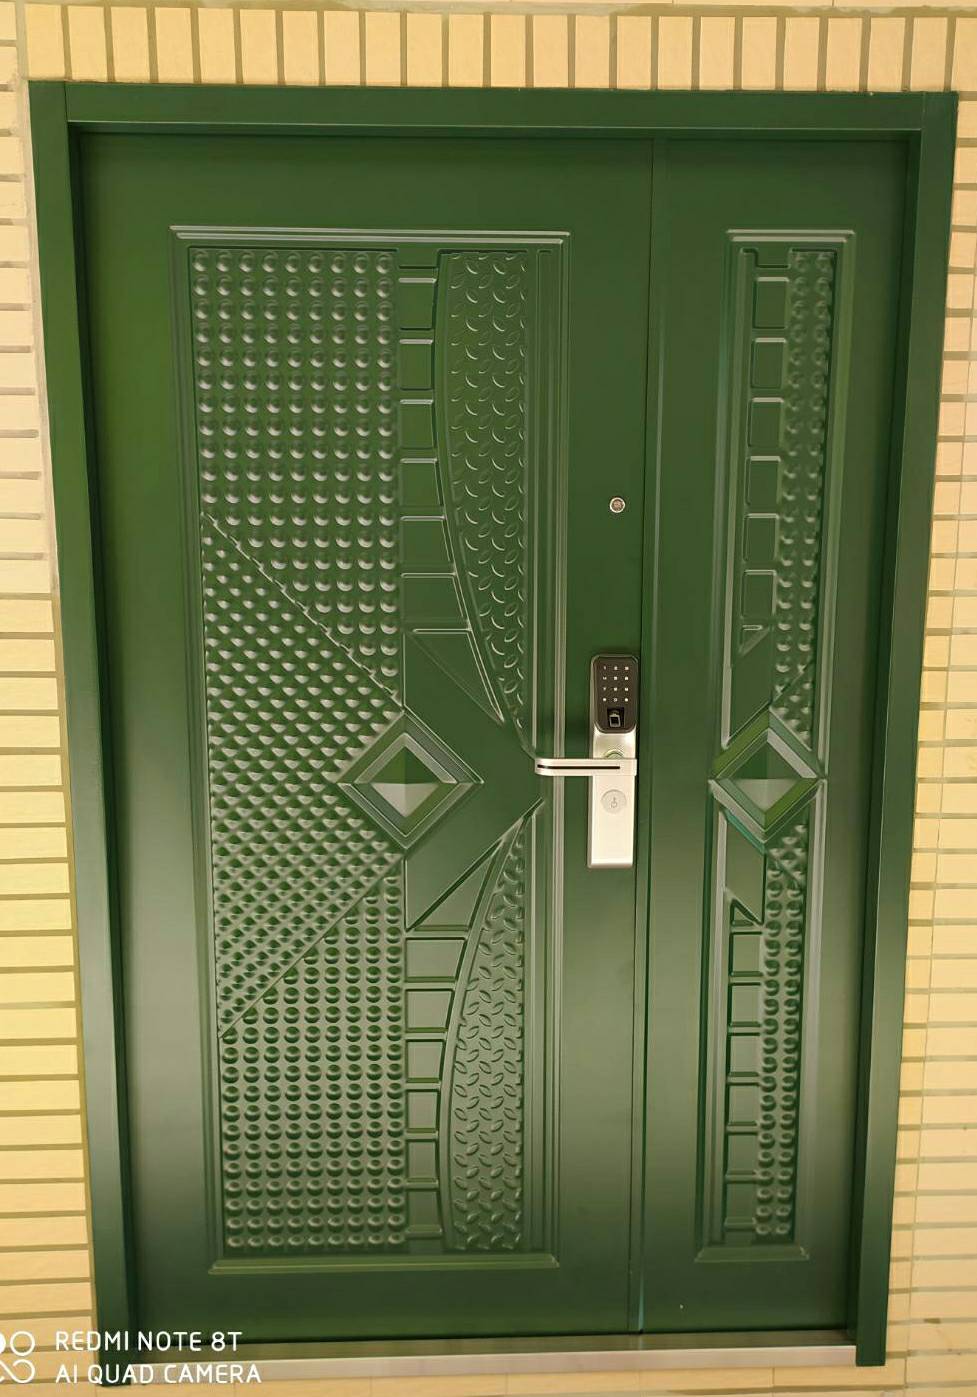 指紋密碼鎖 加 利國子母玄關門50000元含安裝、拆舊門、清運舊門、泥作填縫